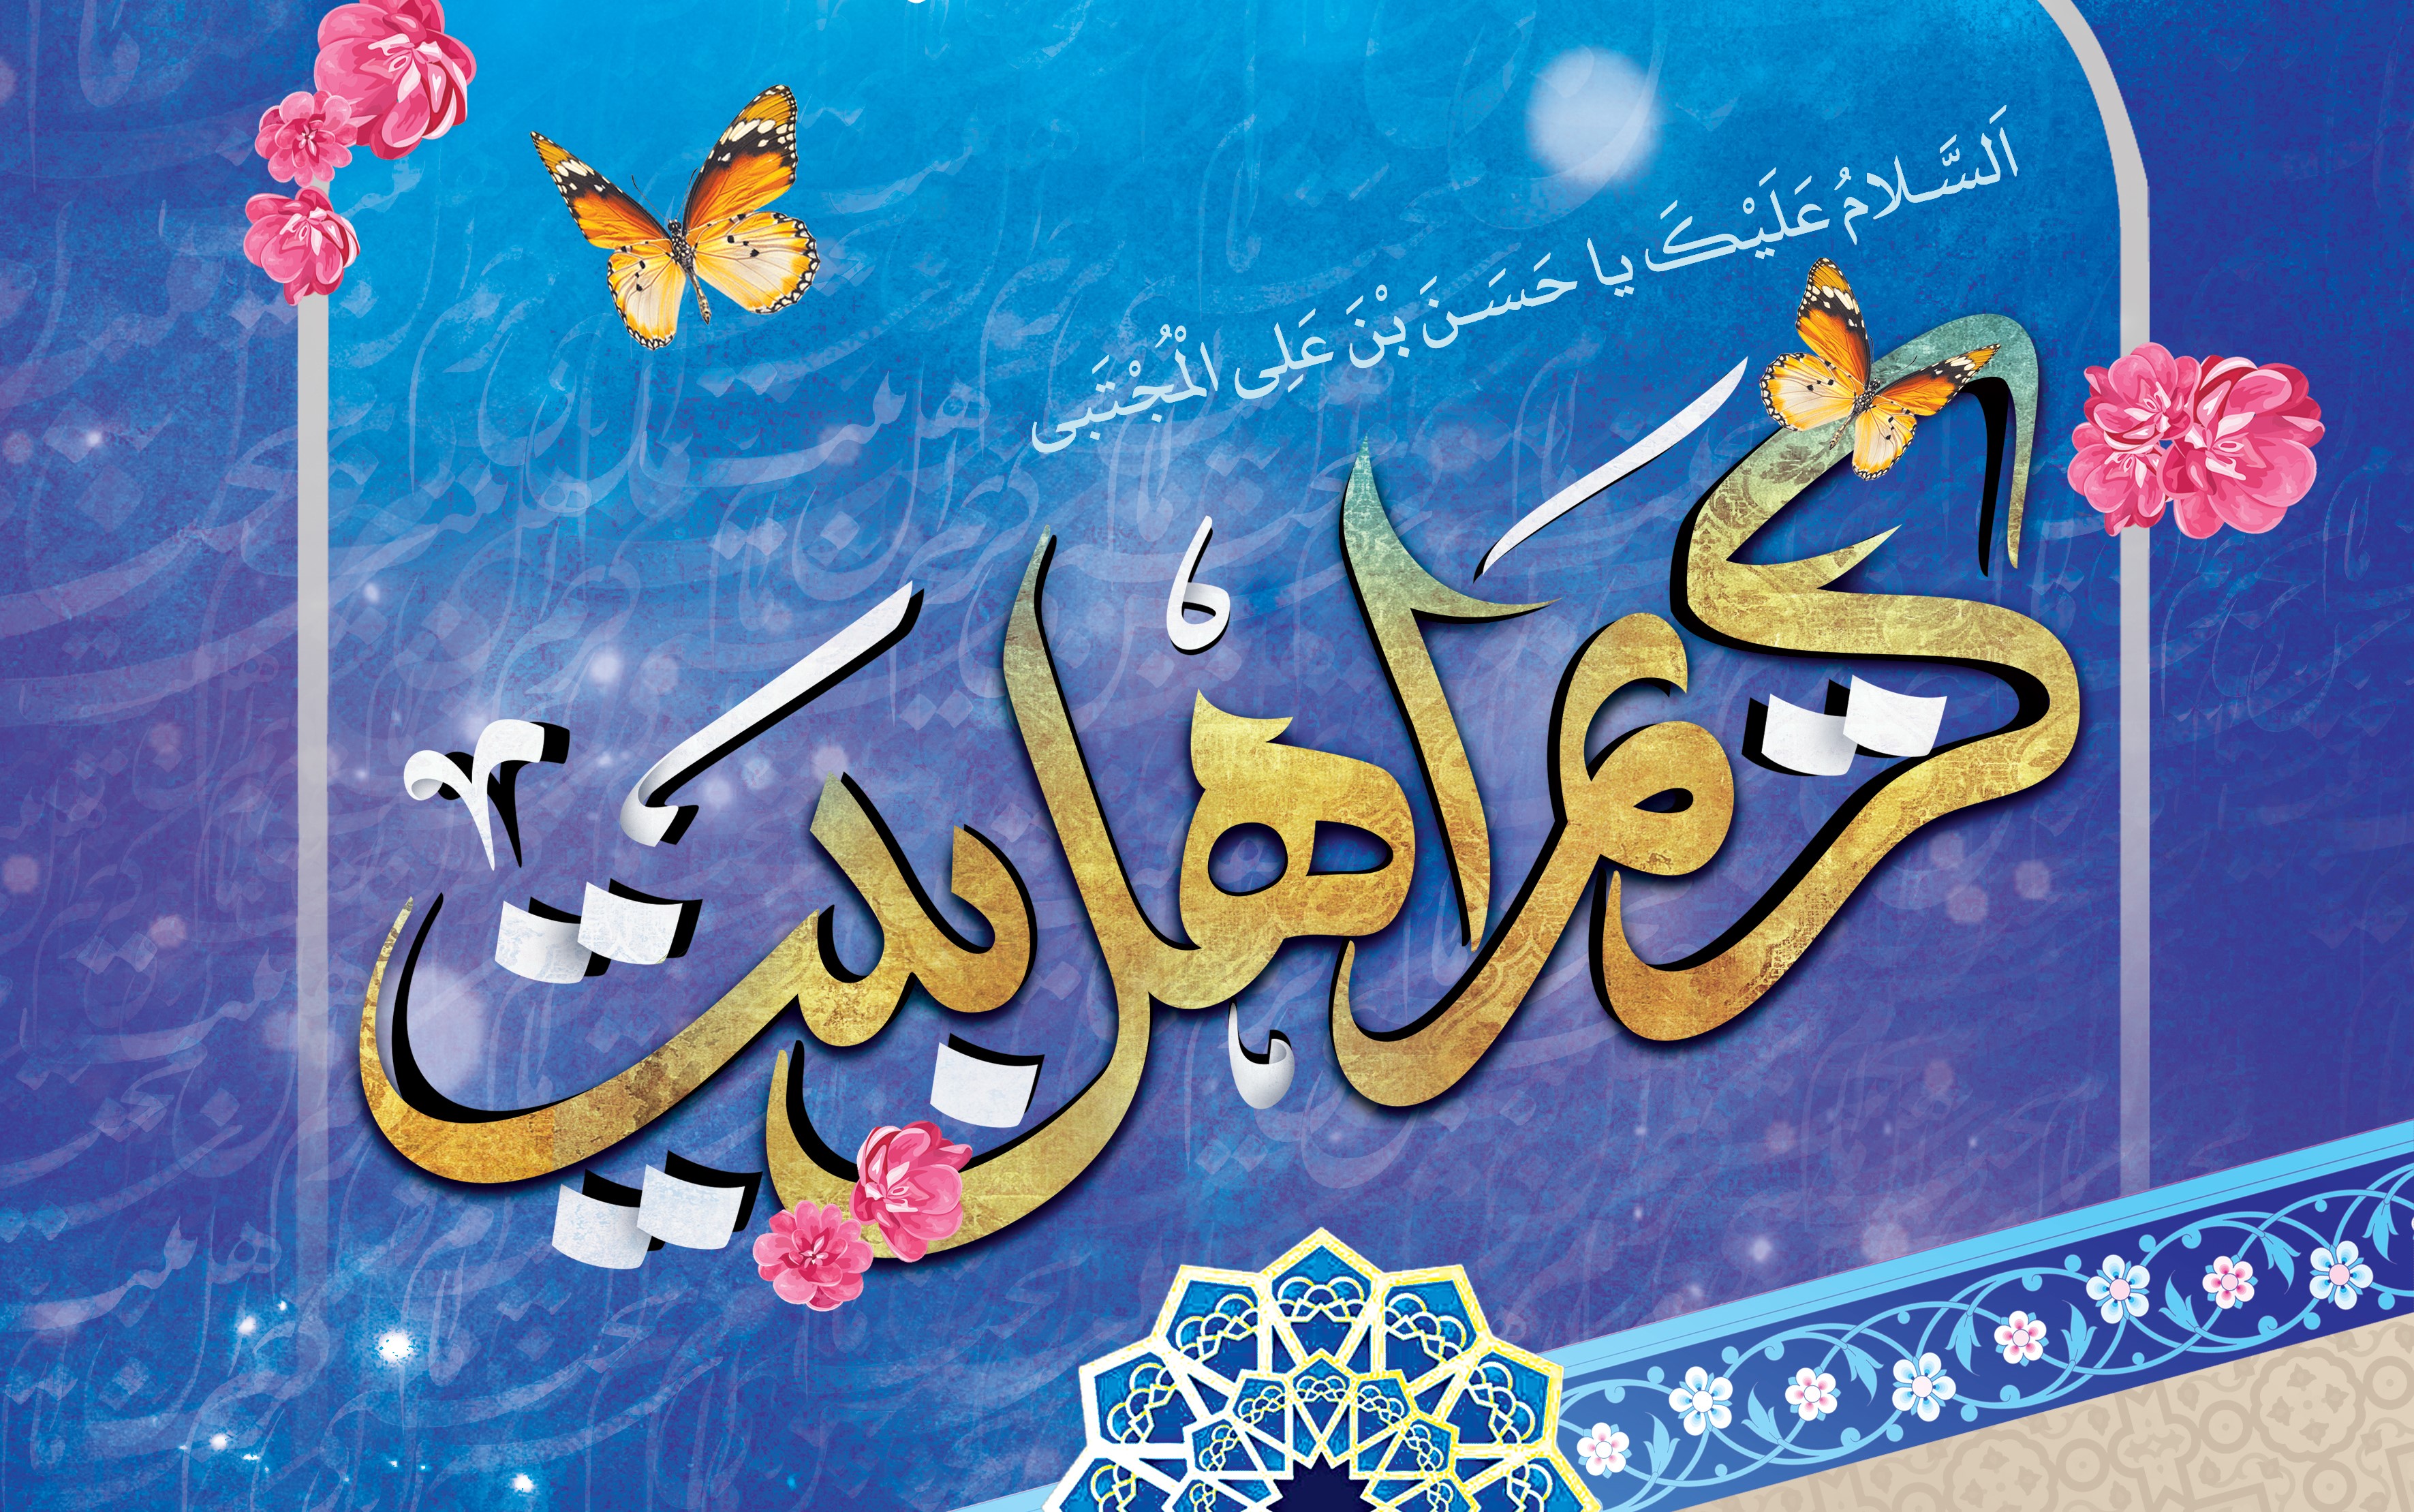 مسجد «امام خمینی (ره)» شیراز در نیمه رمضان میزبان جشن کریم اهل بیت (ع) شد